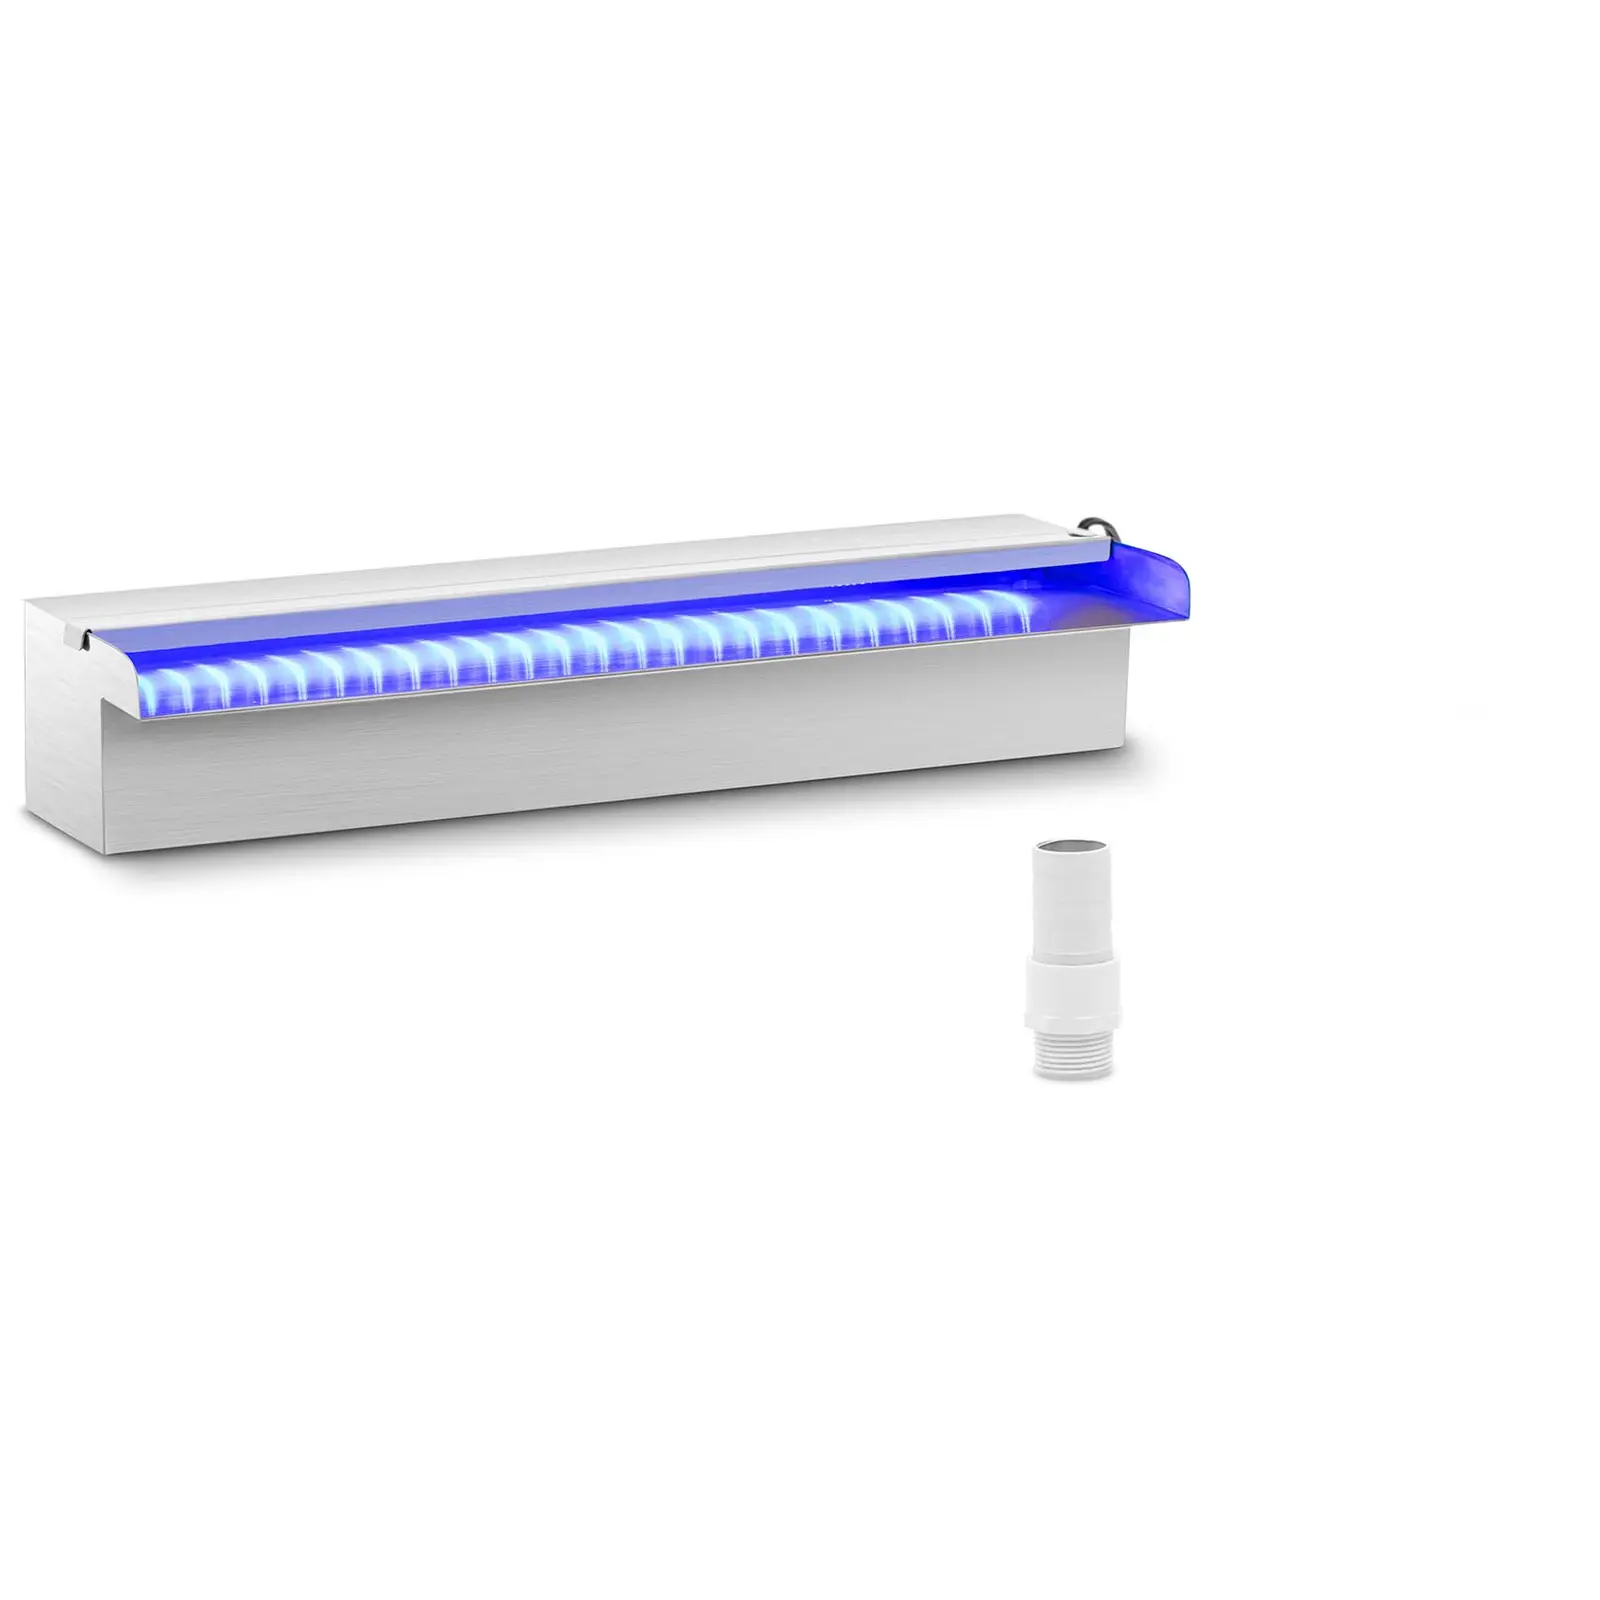 Силен душ - 45 cm - LED осветление - Синьо / Бяло